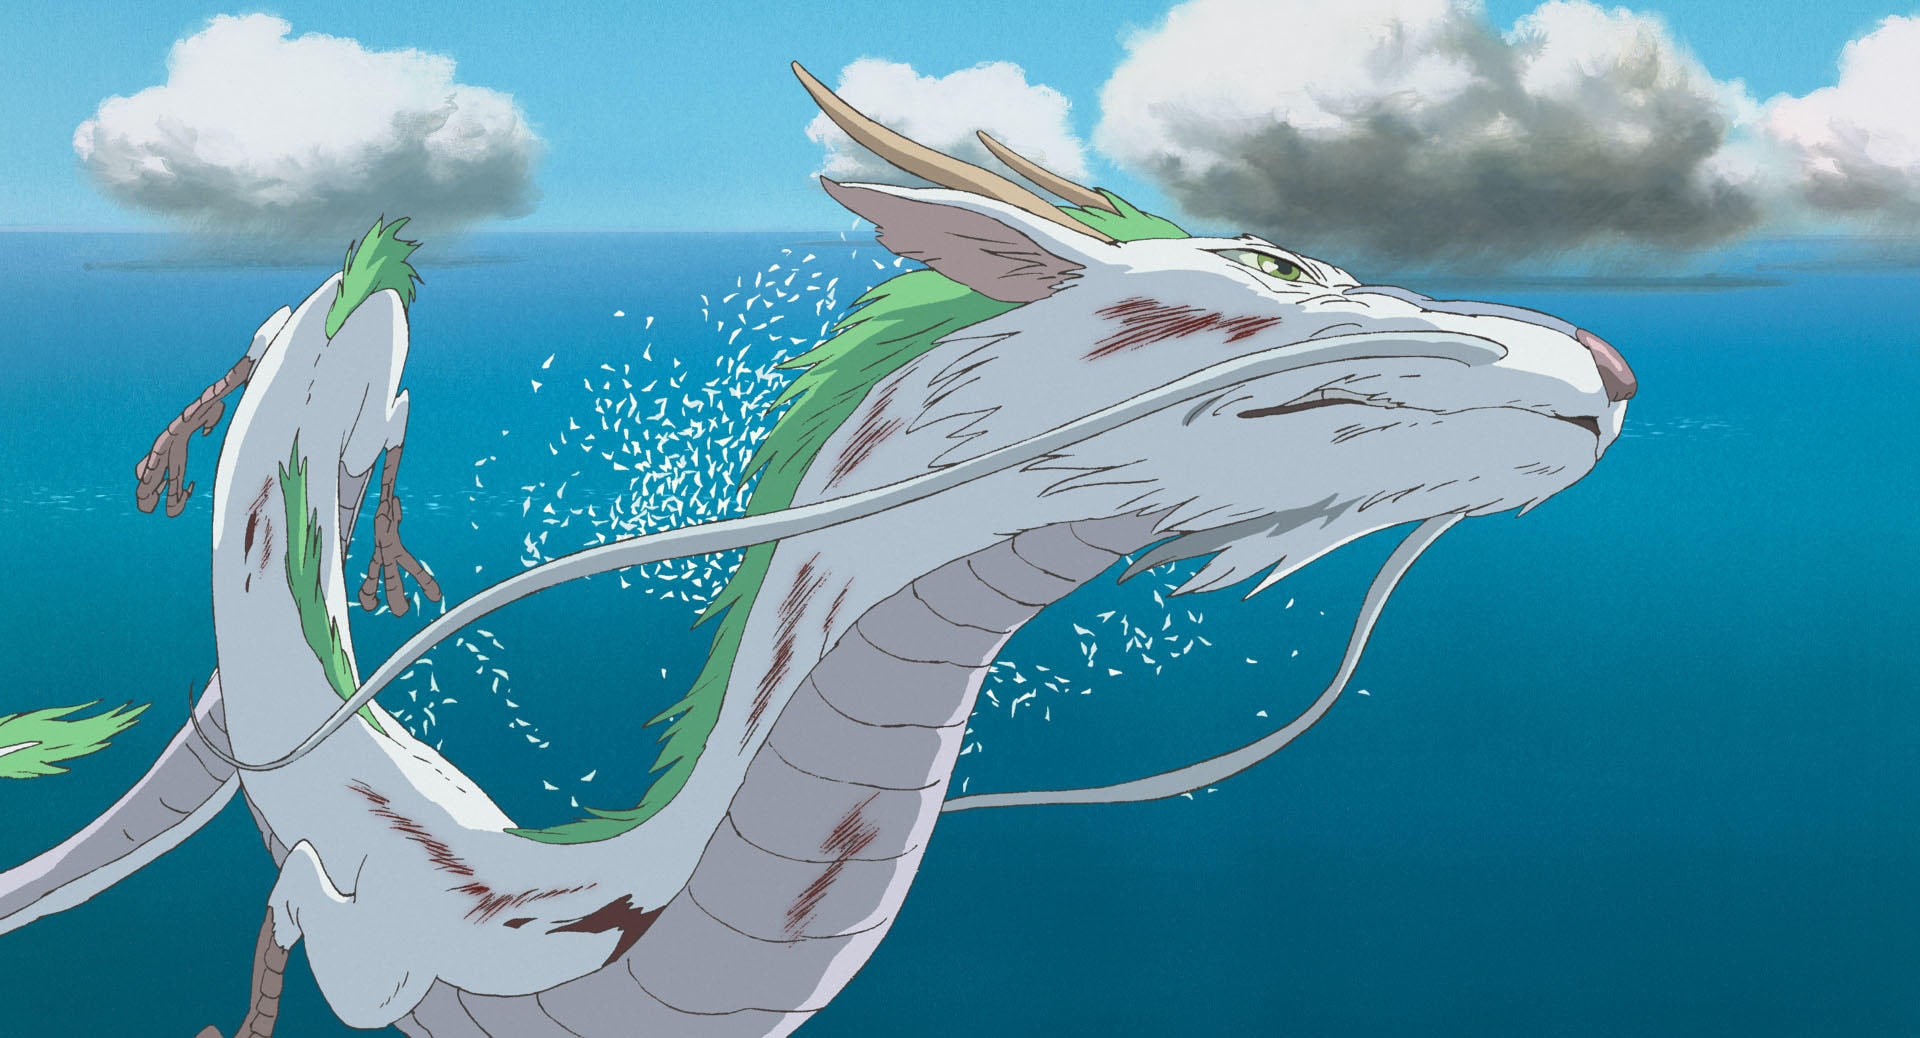 『千と千尋の神隠し』より。龍の姿で空を飛ぶハク　©2001 Studio Ghibli・NDDTM